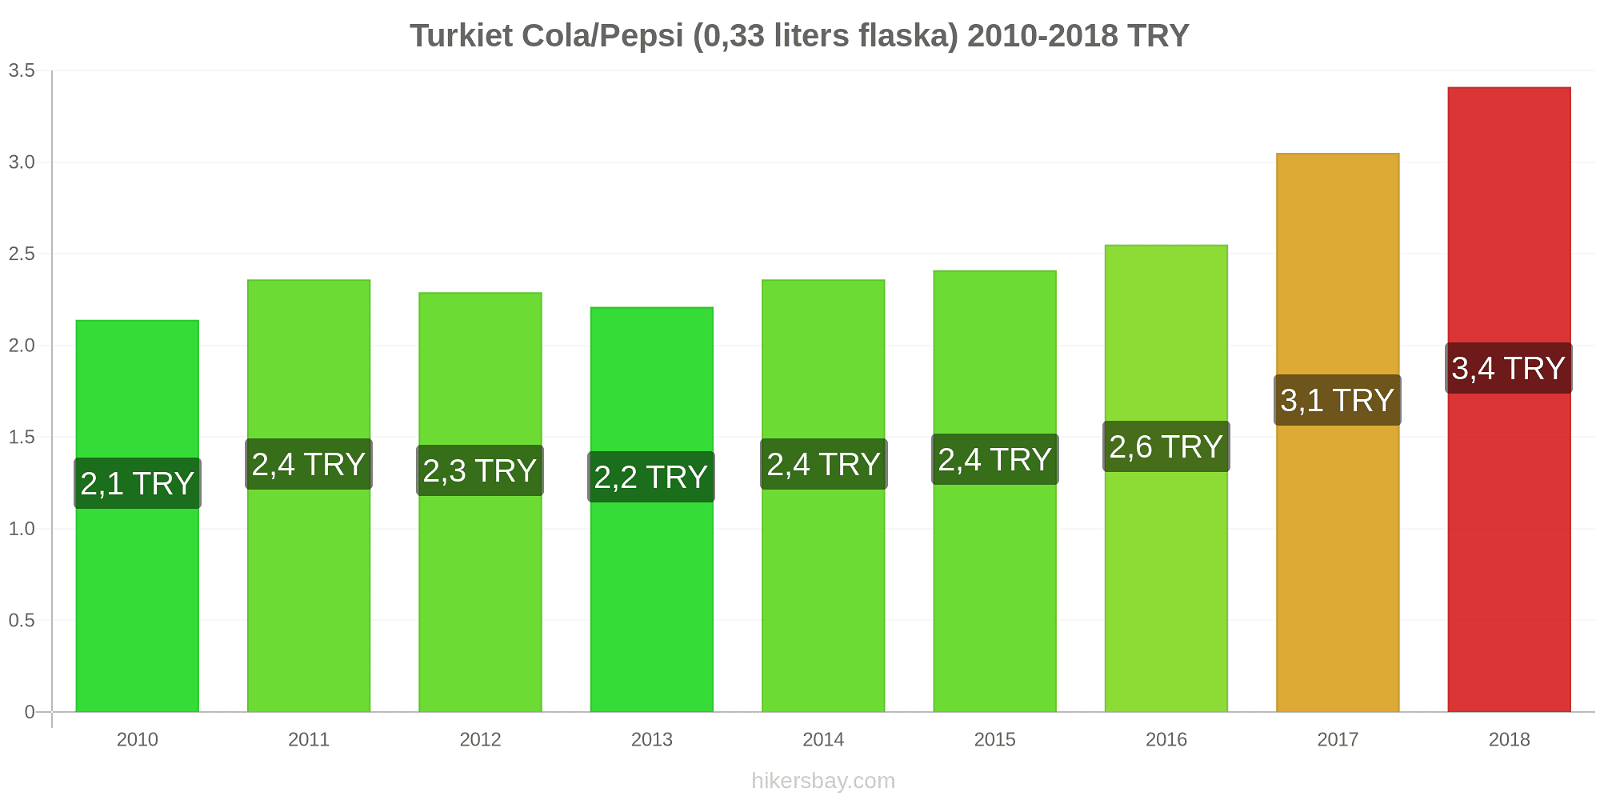 Turkiet prisändringar Coca-Cola/Pepsi (0.33 liters flaska) hikersbay.com